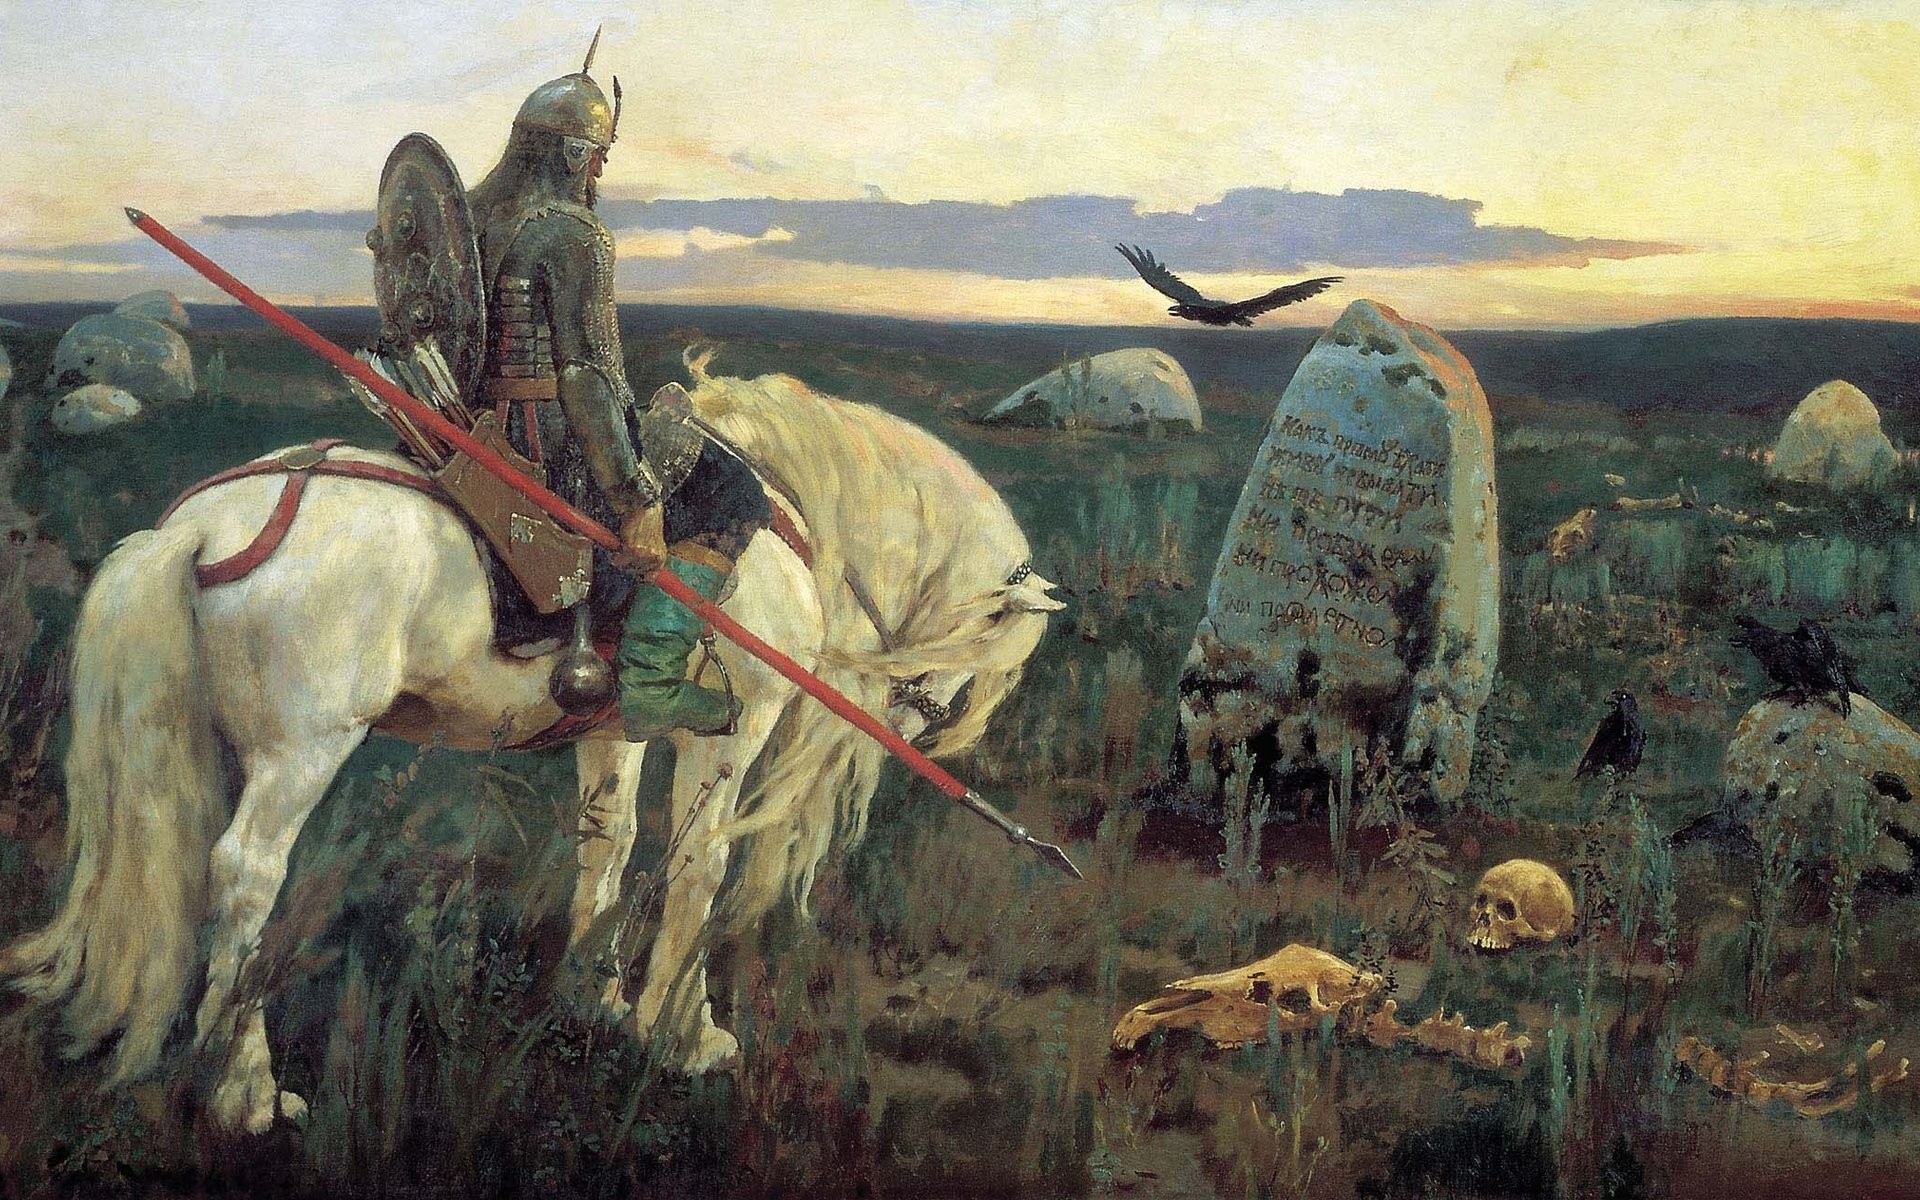 черепа, картины, оружие, щит, лошади, произведение искусства, воины, копья, могилы, Виктор Васнецов - обои на рабочий стол